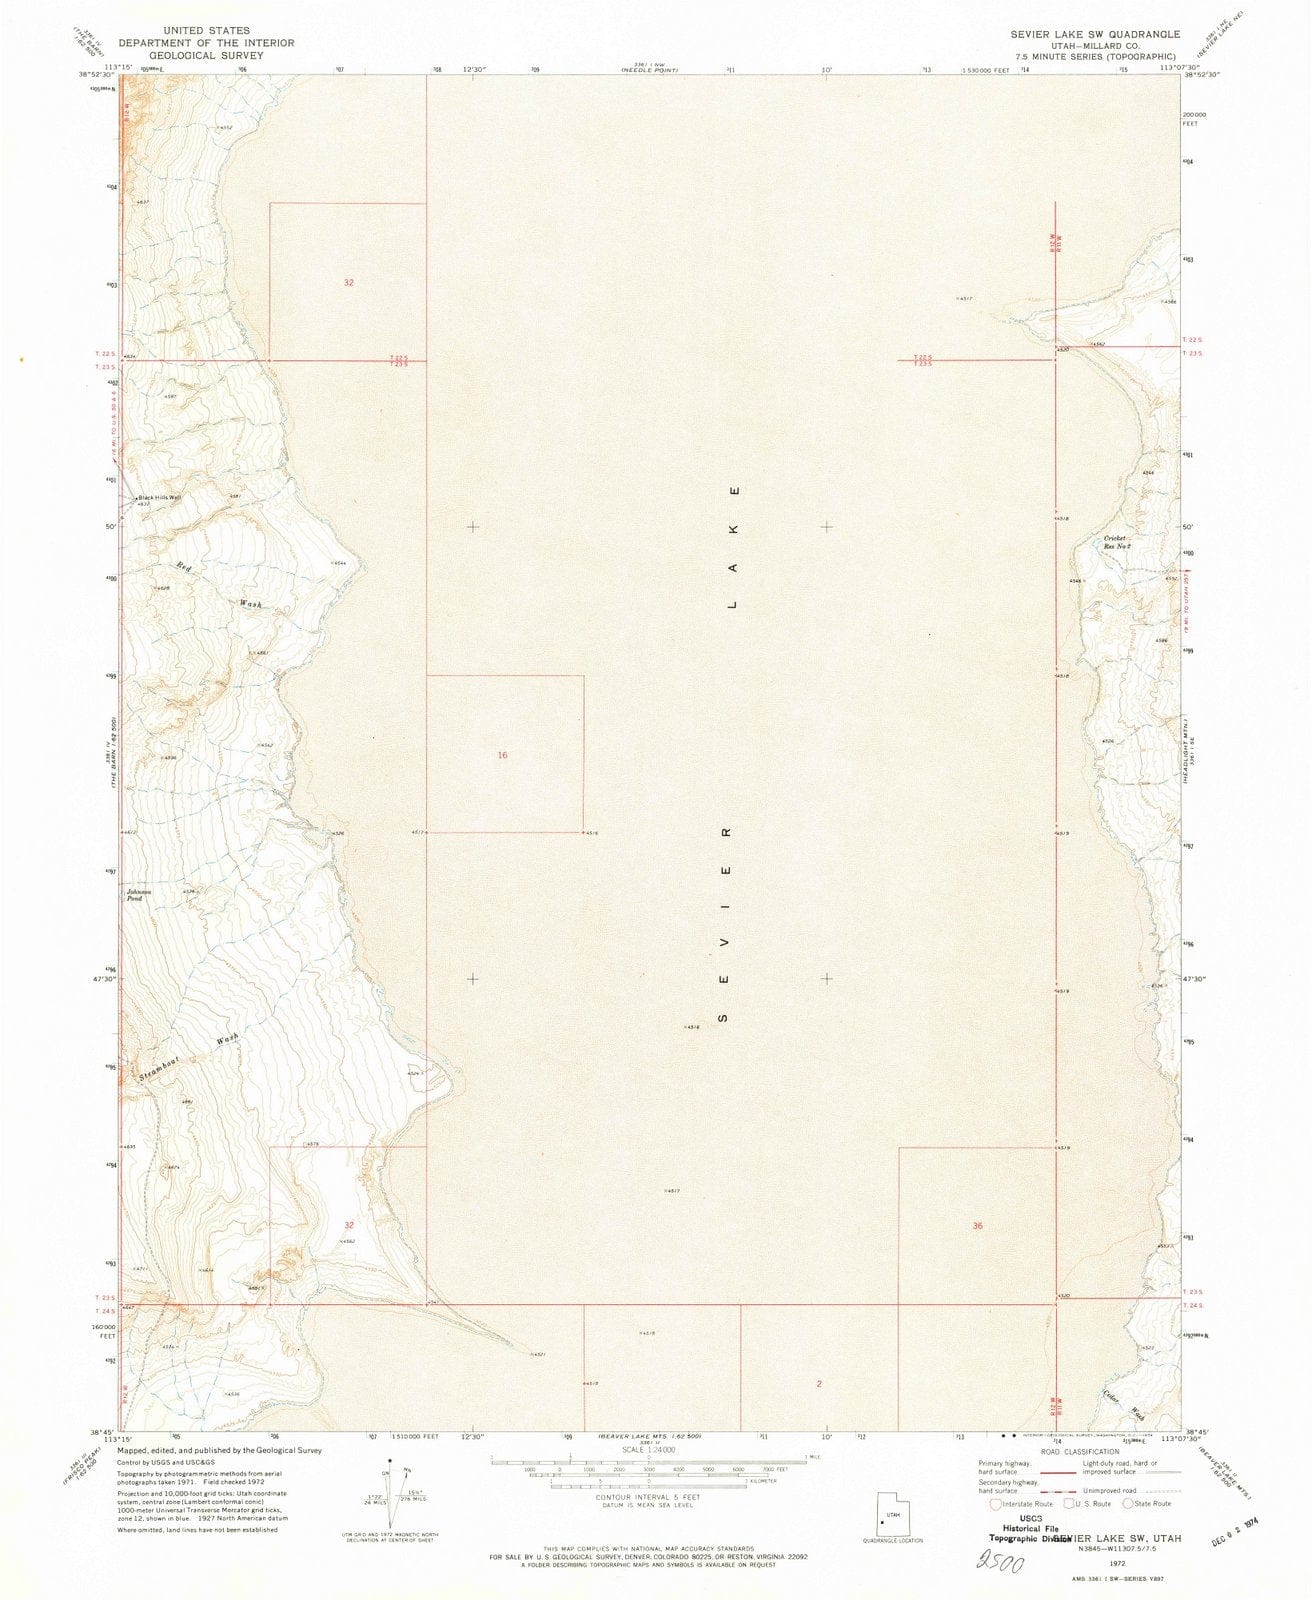 1972 Sevier Lake, UT - Utah - USGS Topographic Map v2